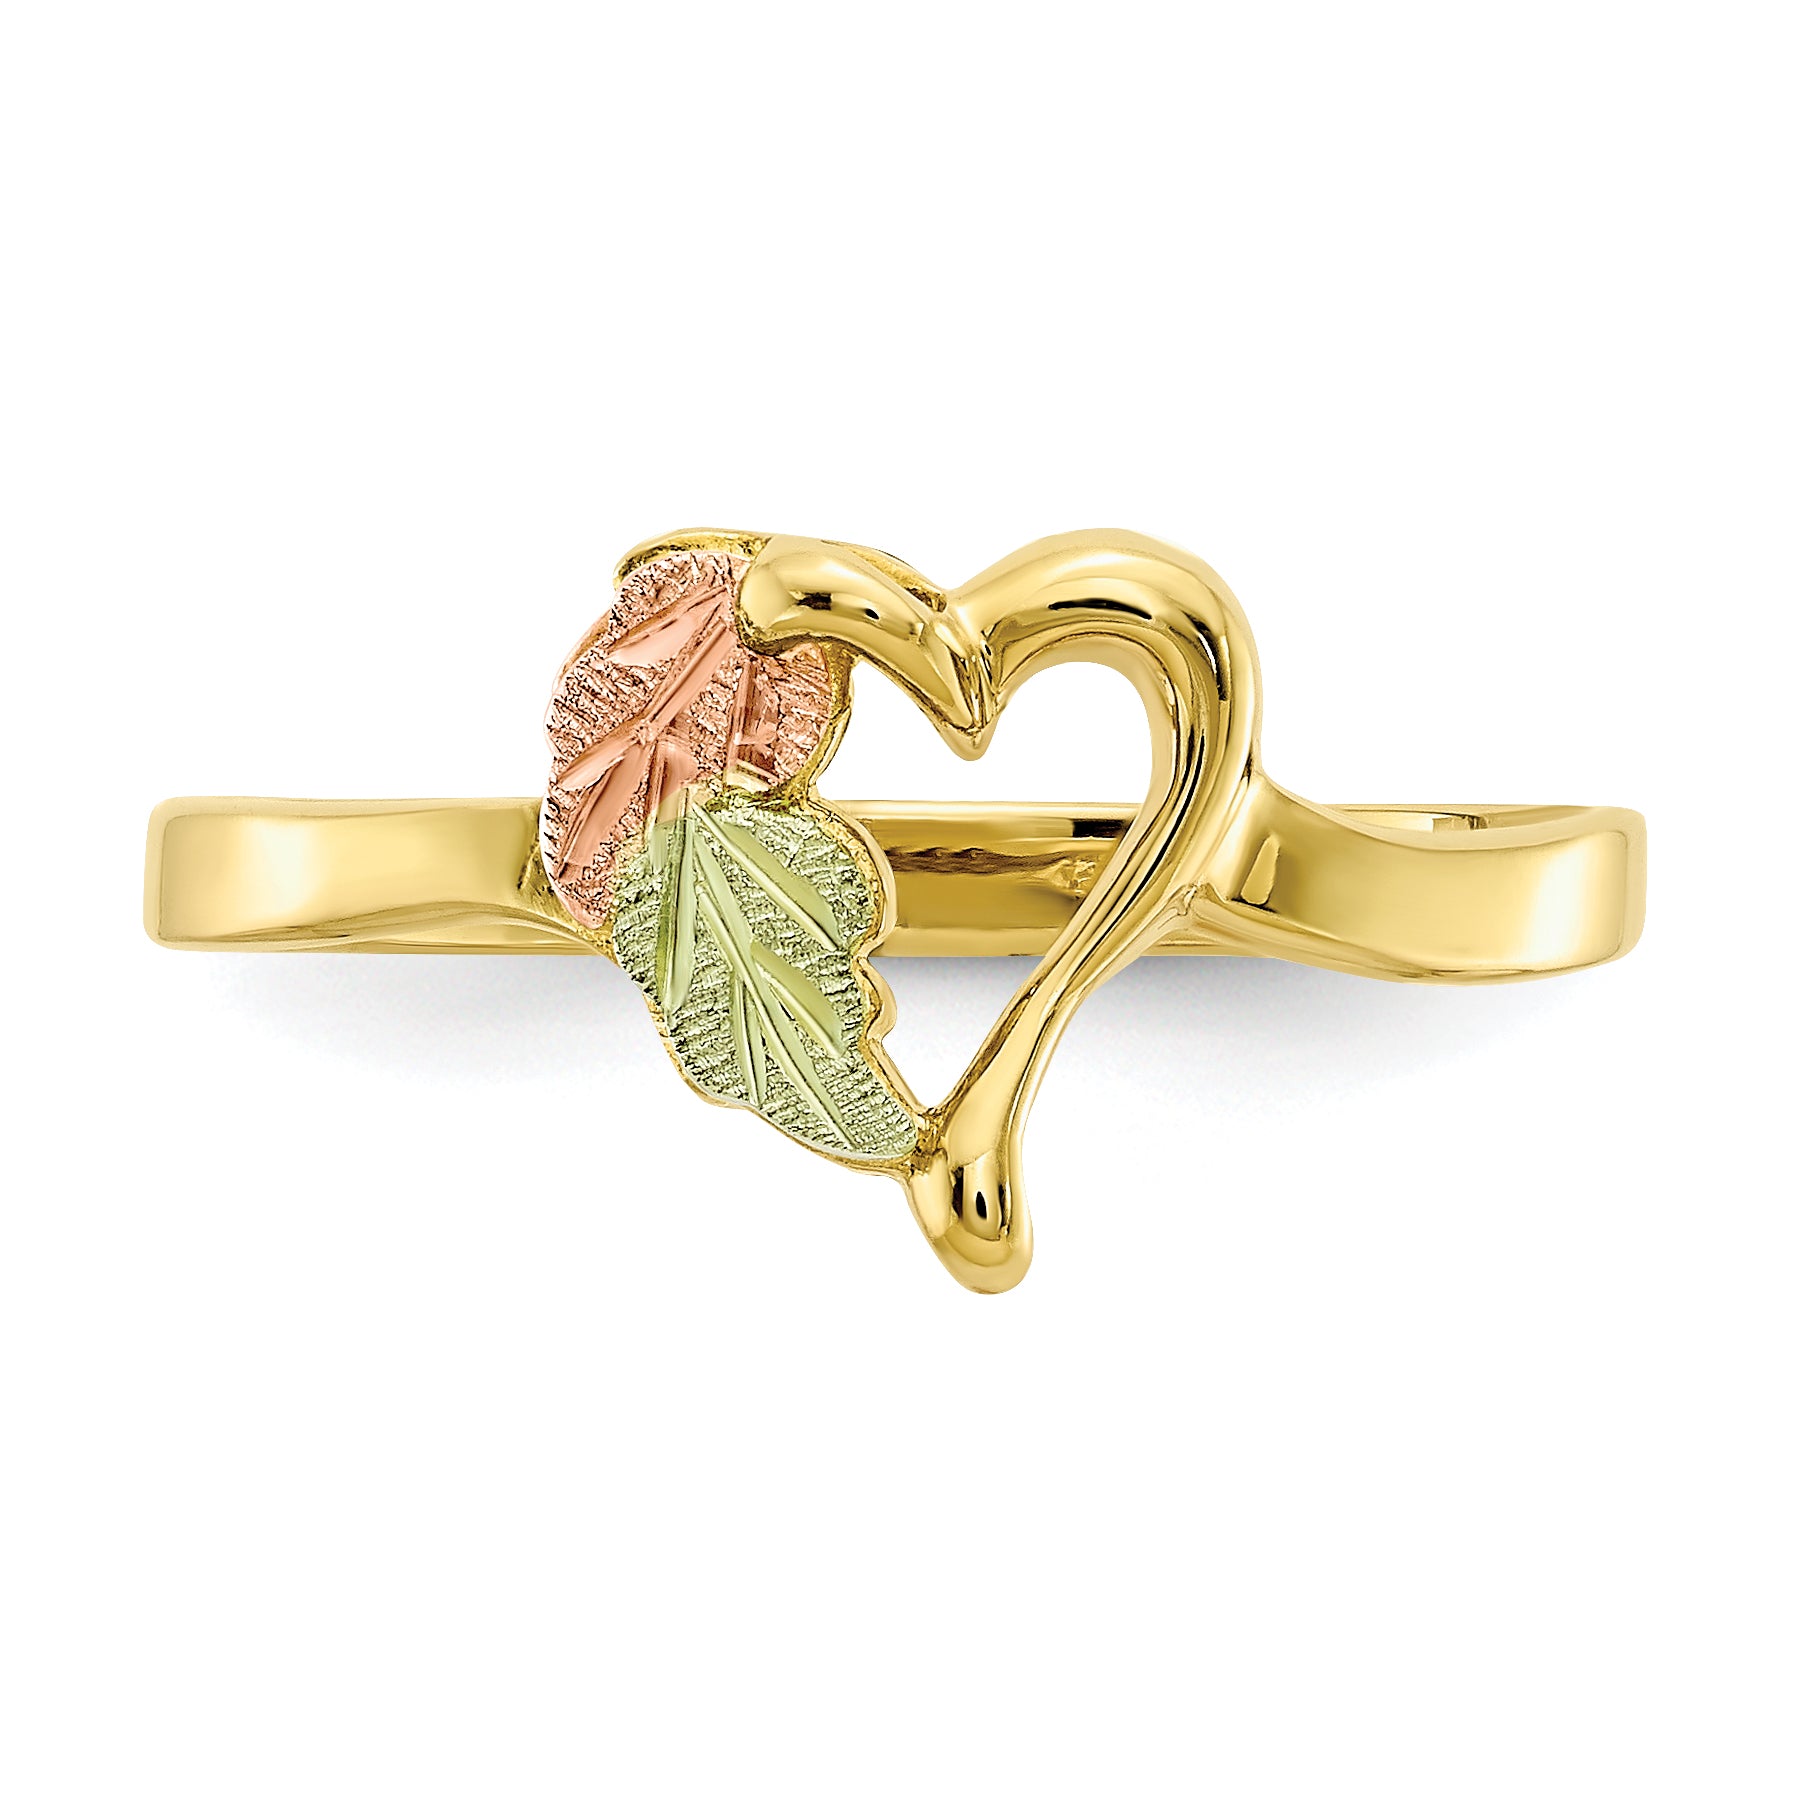 10K Tri-Color Black Hills Gold Heart Ring